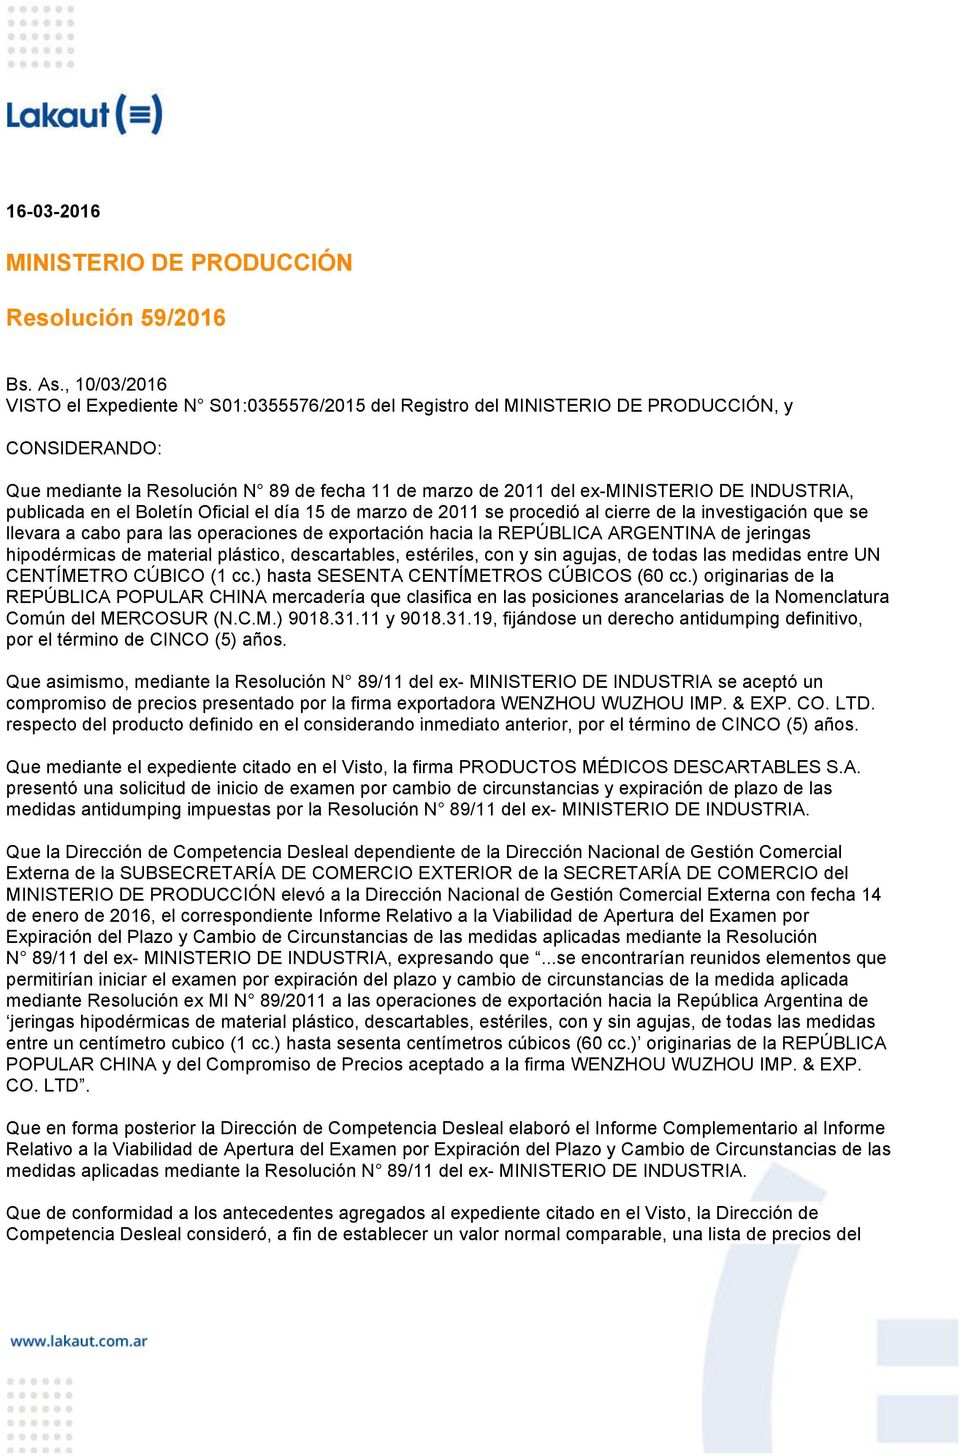 INDUSTRIA, publicada en el Boletín Oficial el día 15 de marzo de 2011 se procedió al cierre de la investigación que se llevara a cabo para las operaciones de exportación hacia la REPÚBLICA ARGENTINA